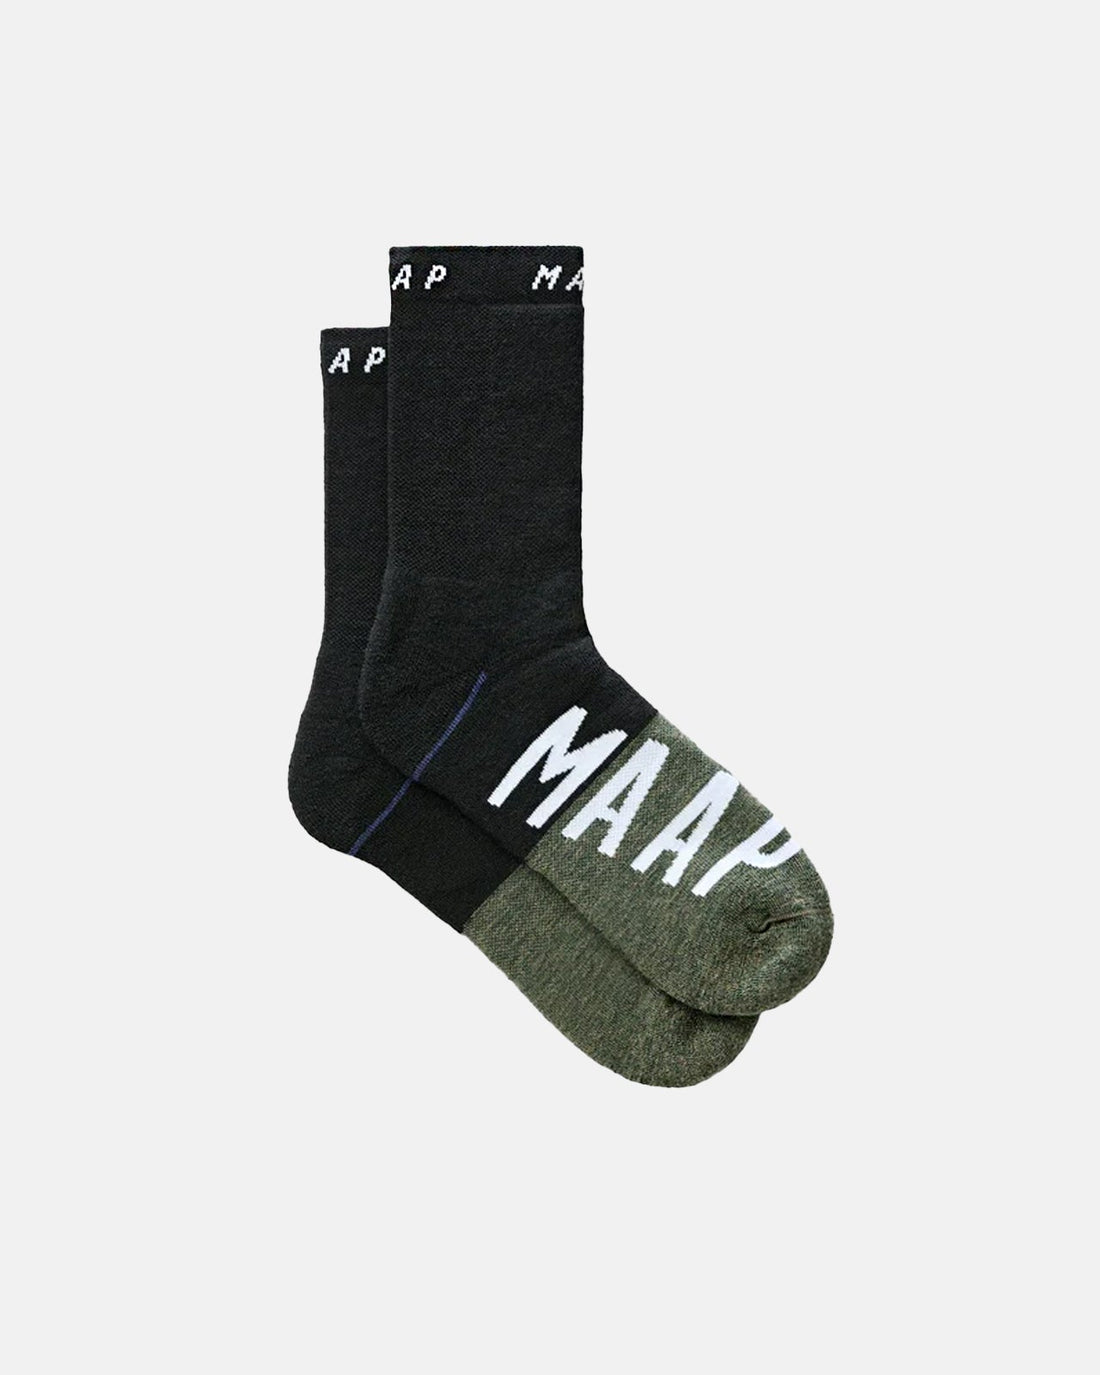 MAAP Apex Wool Sock - Black